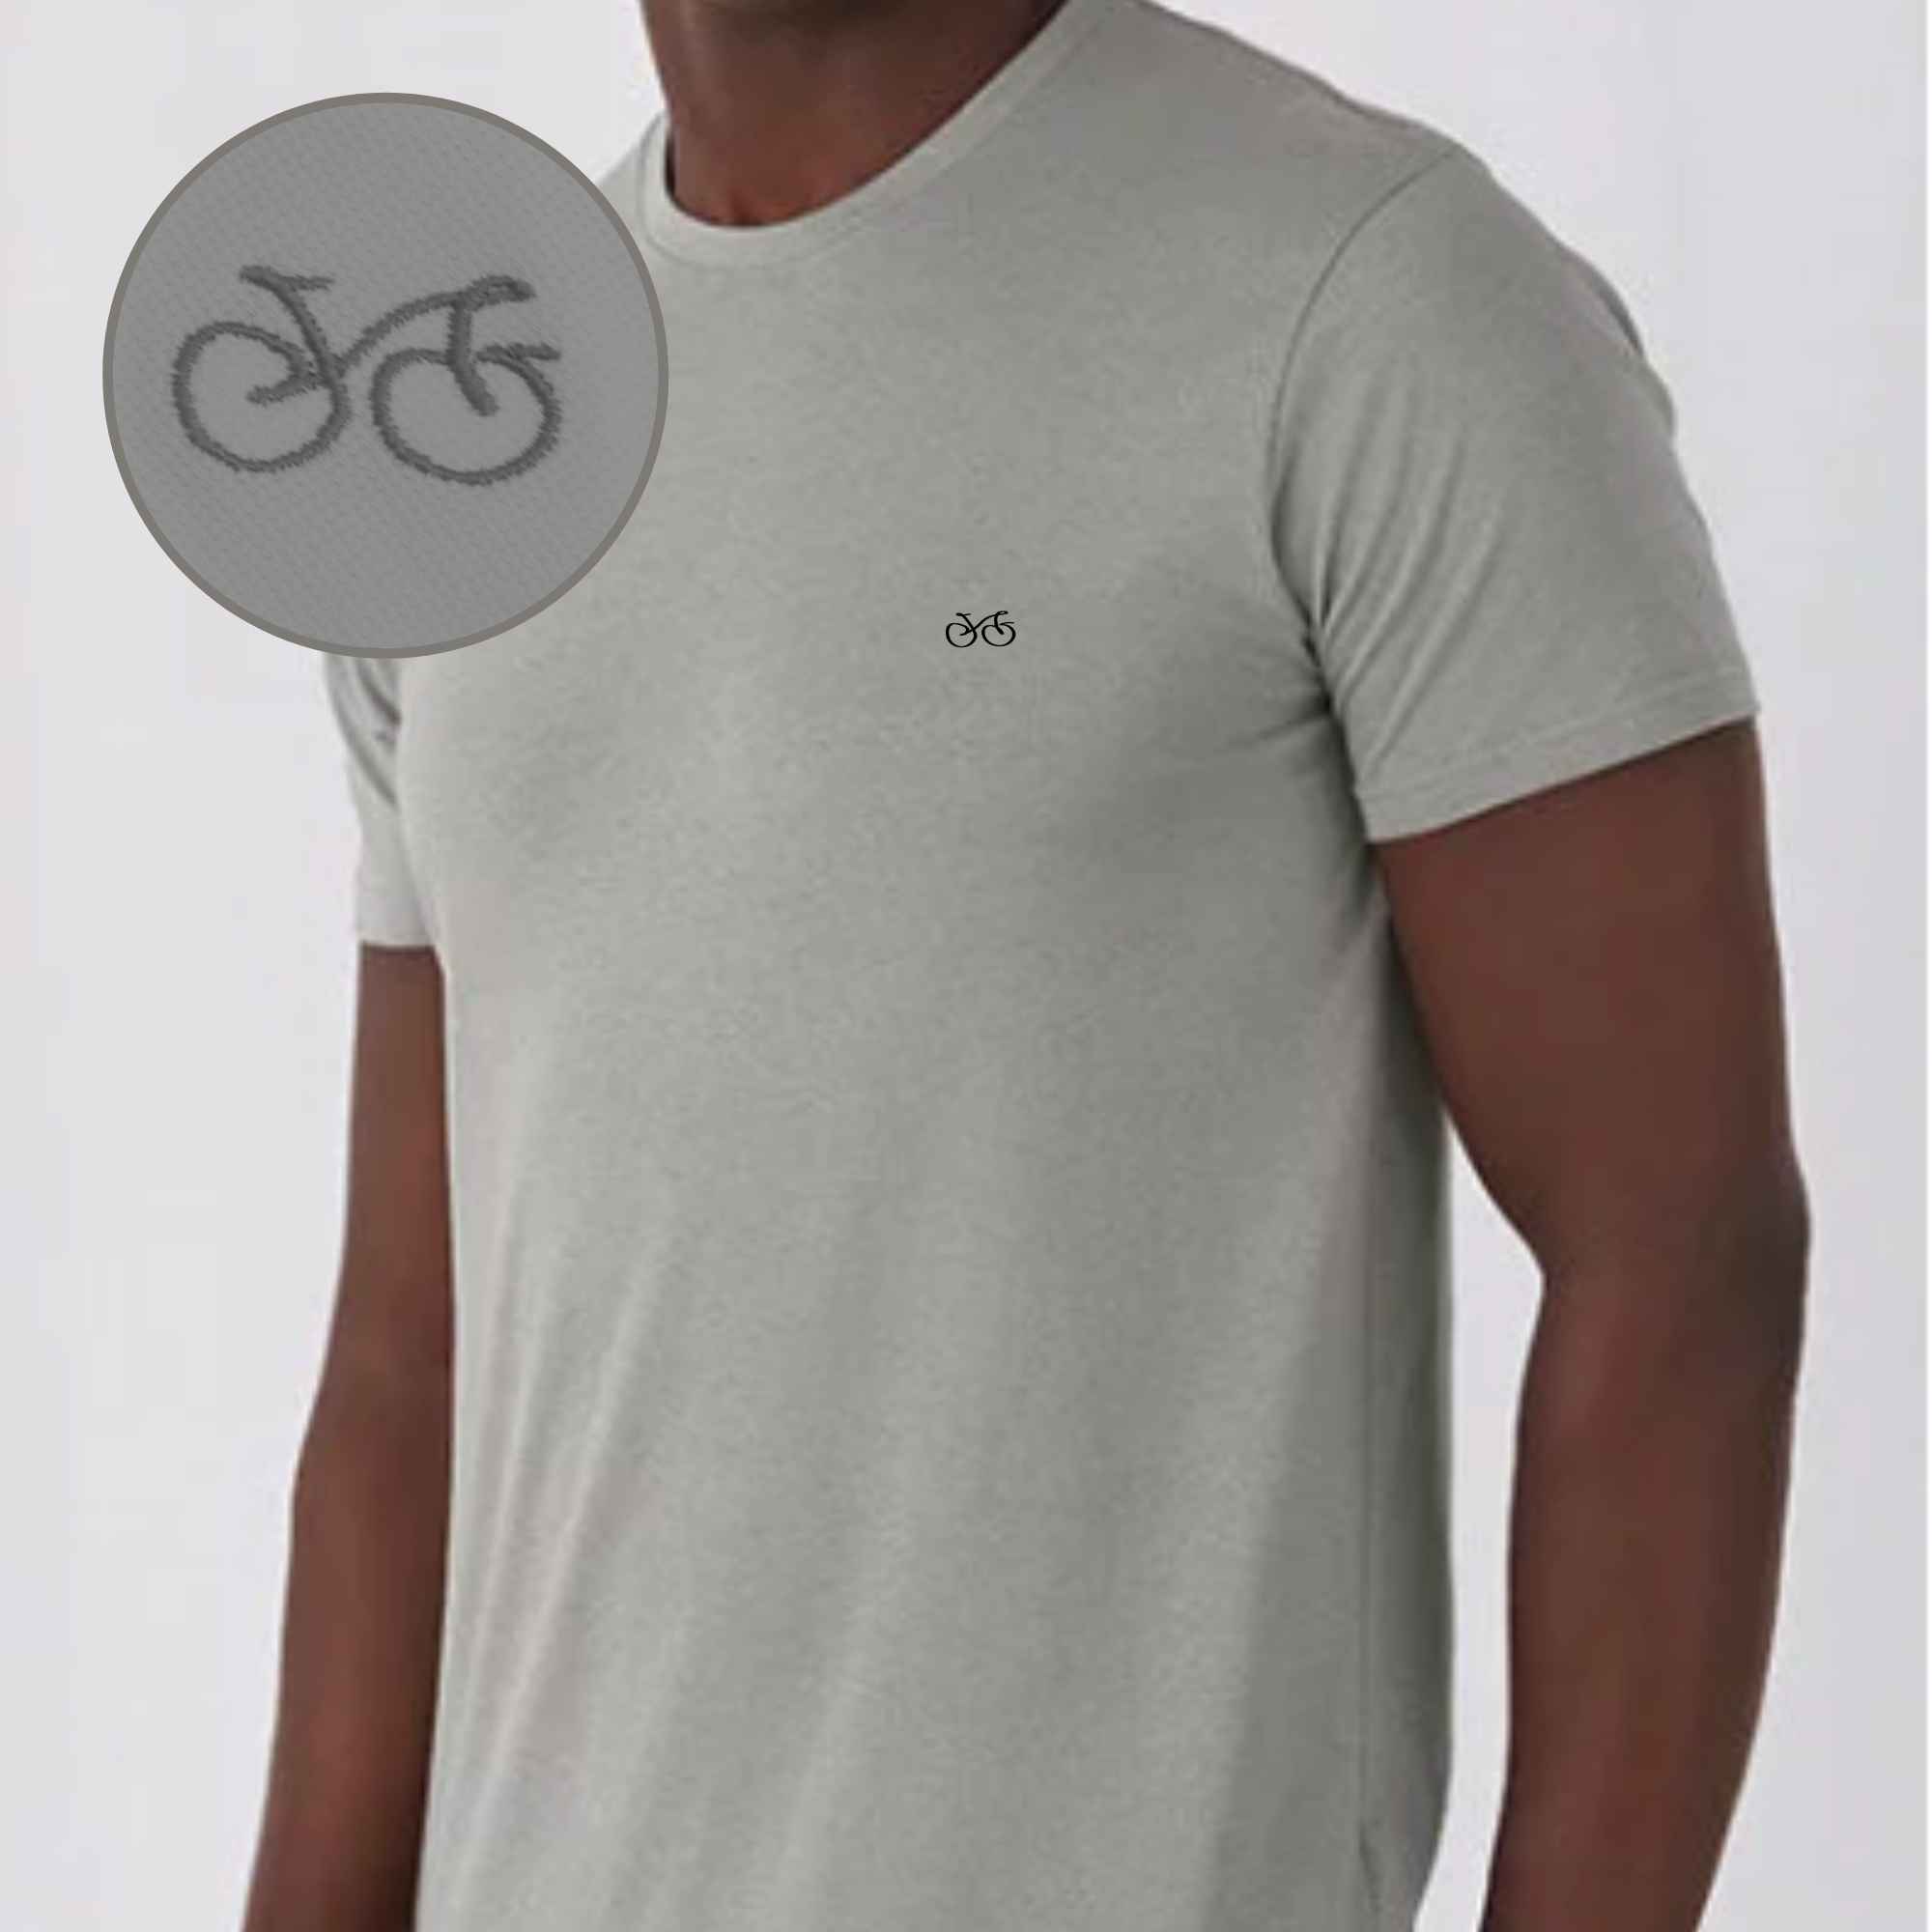 Schickes Fahrradsymbol auf grauem T-Shirt gestickt für Männer